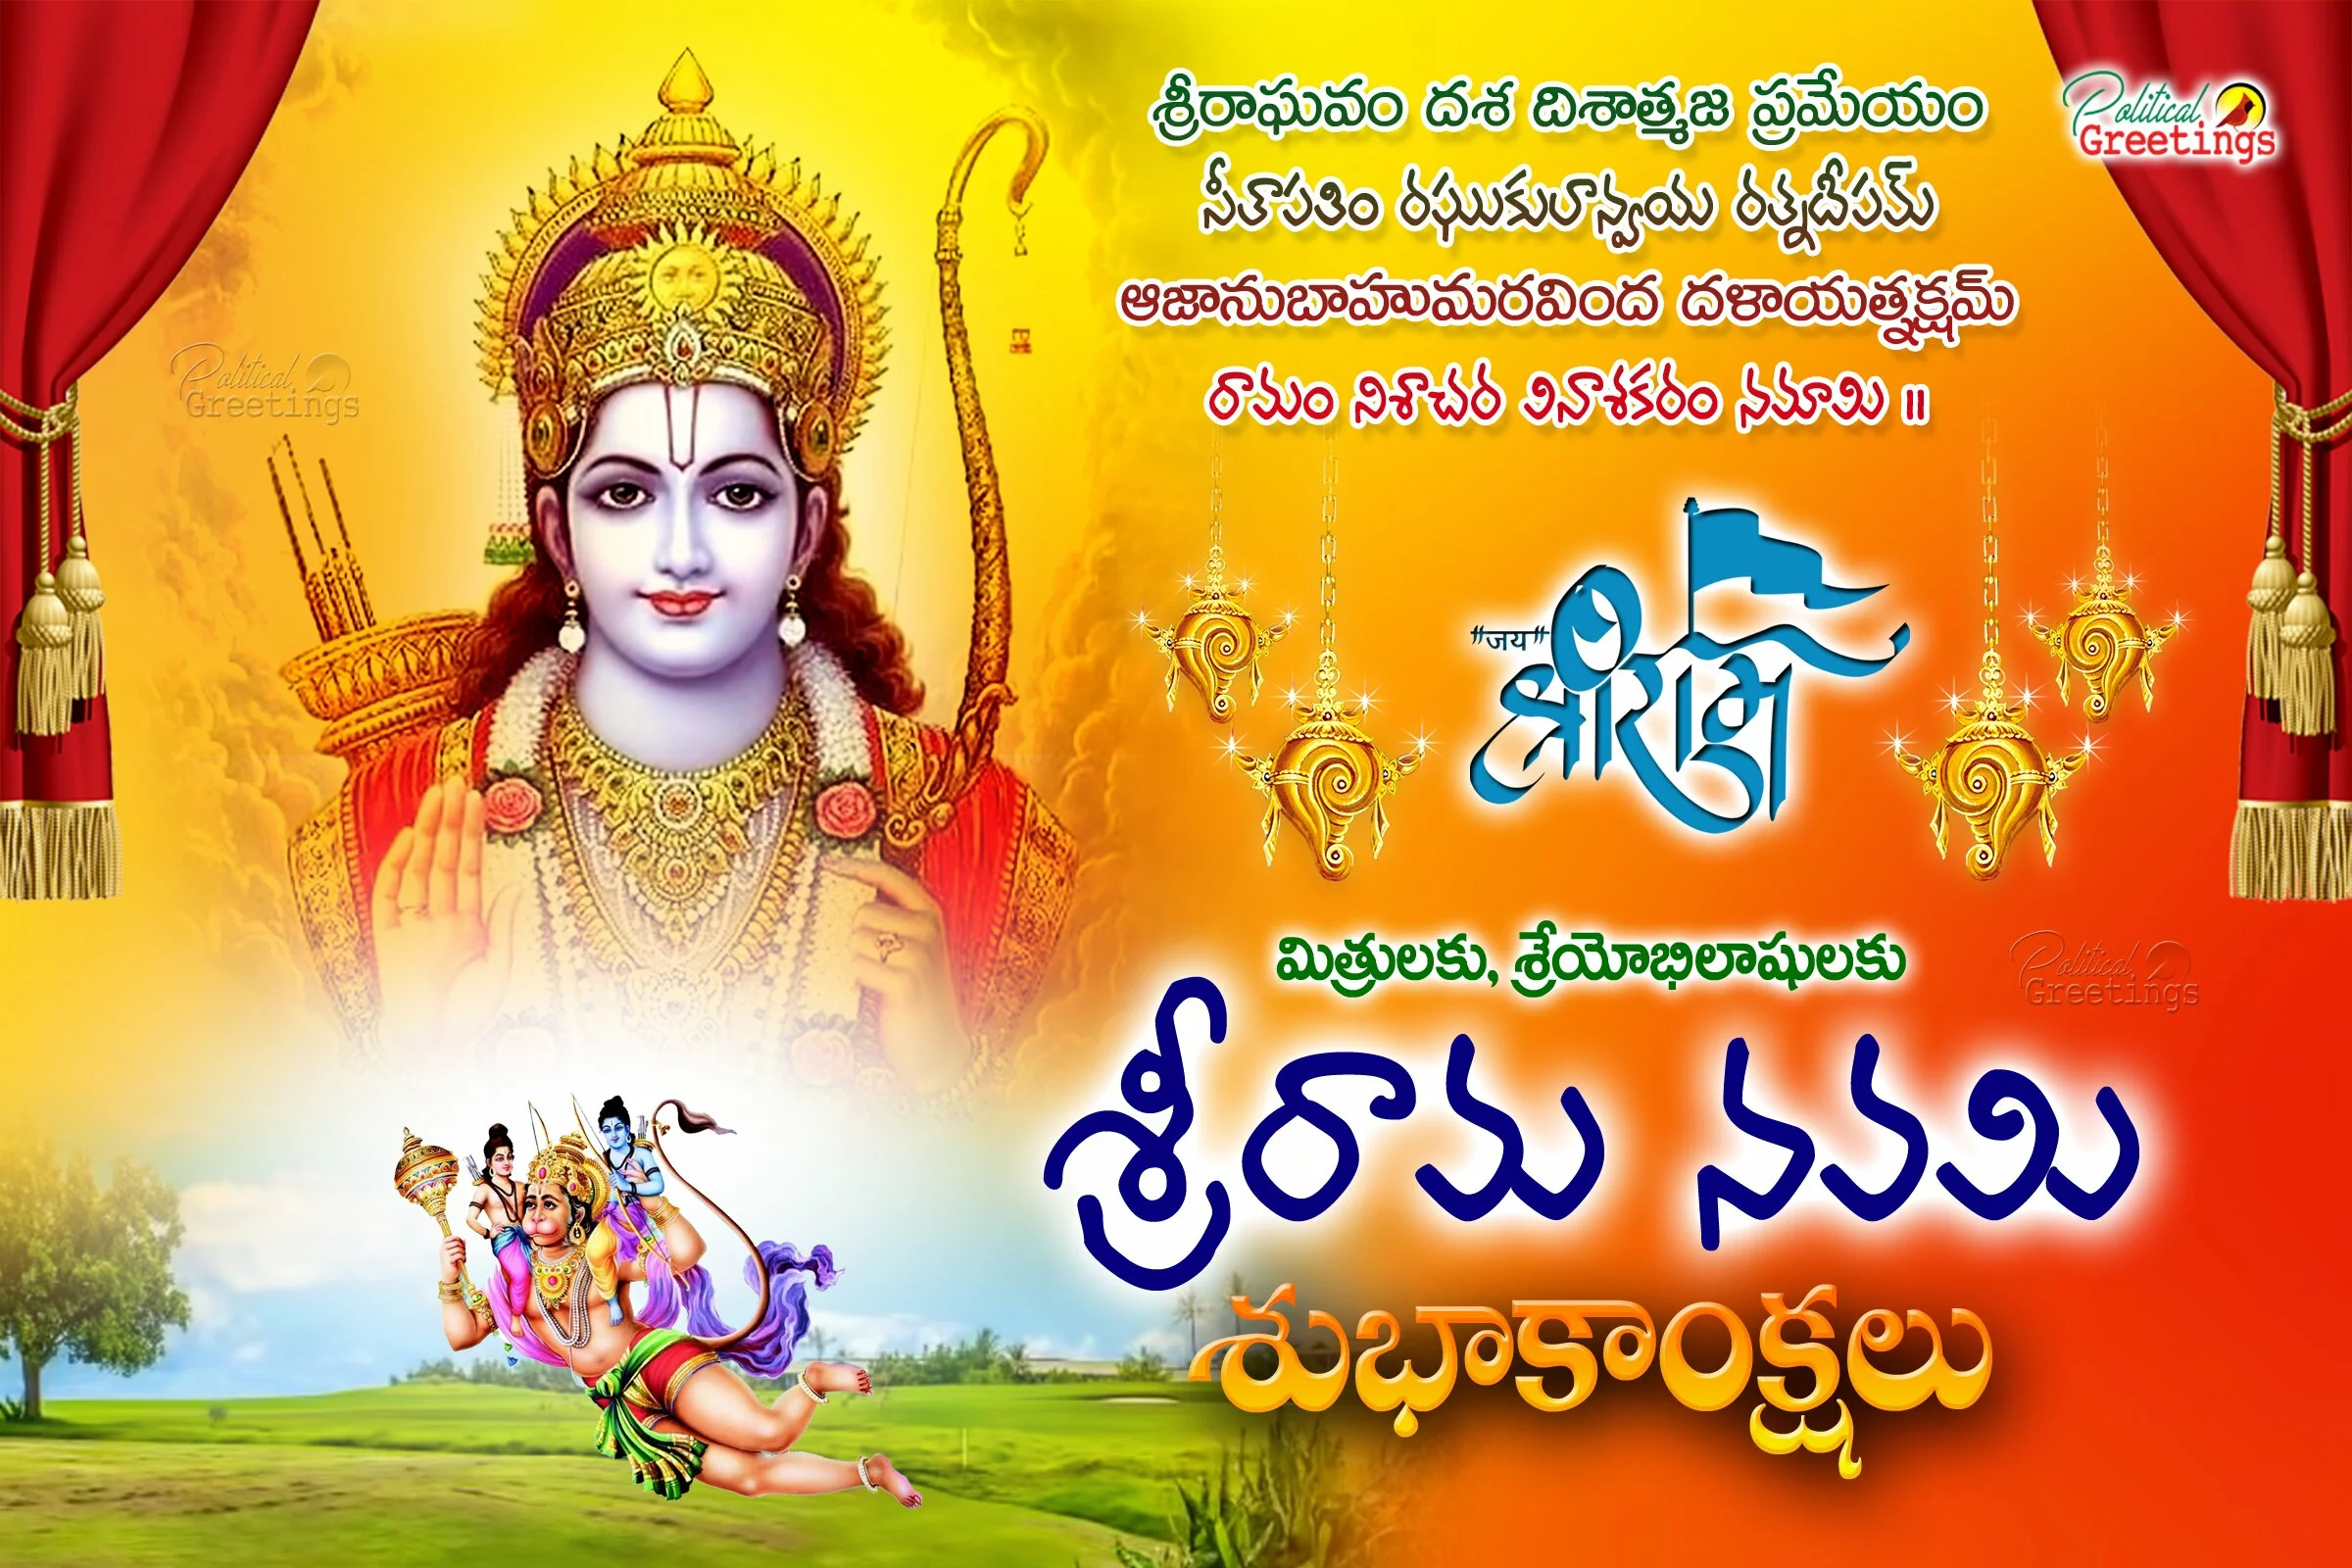 Famous Telugu Sriramanavami Greetings Wallpapers in 2018 Free download